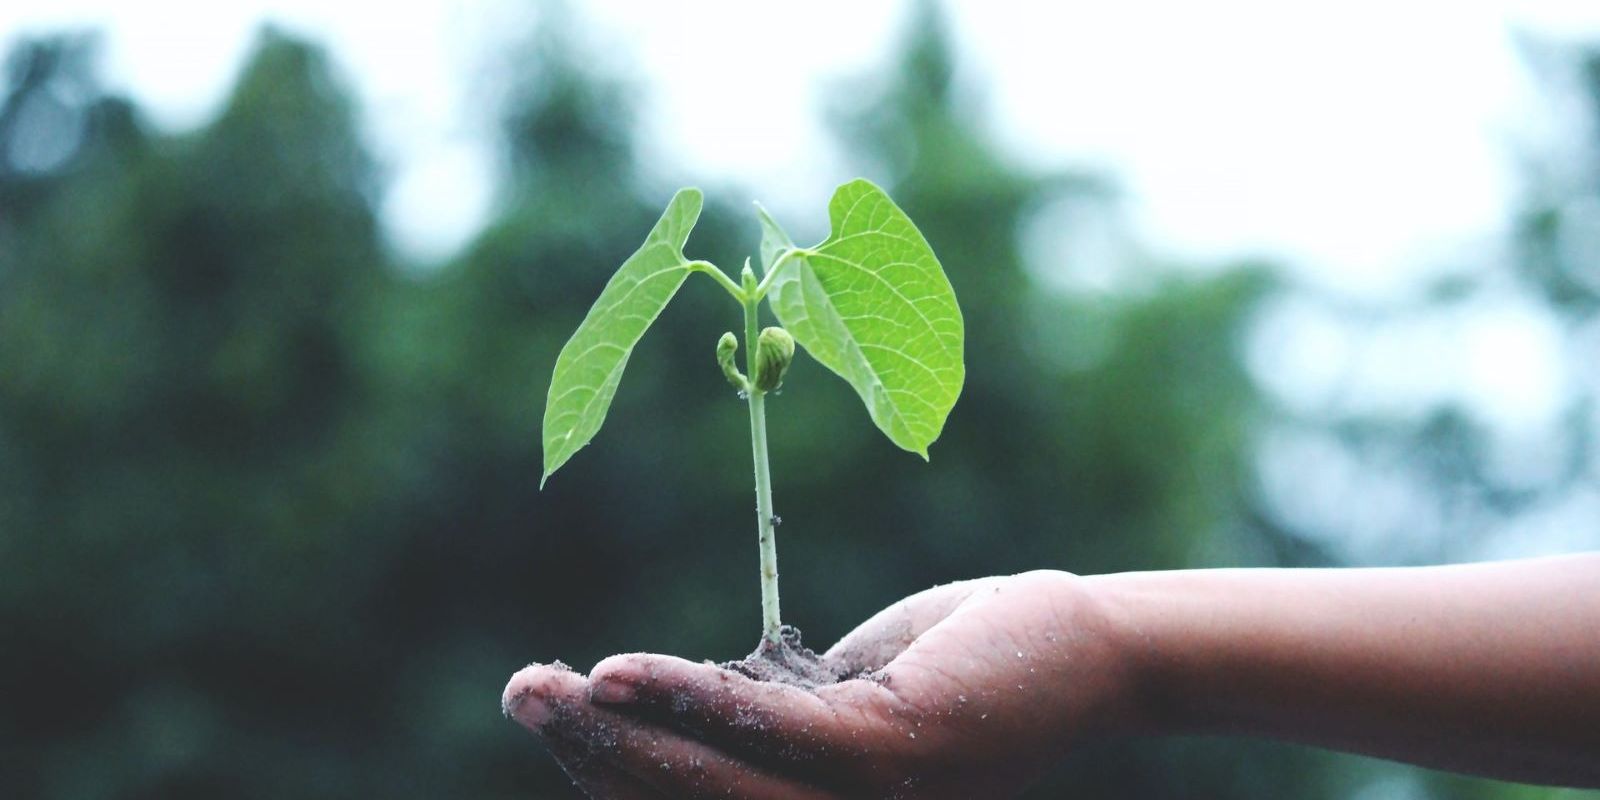 pessoa-segurando-uma-planta-verde-sustentabilidade